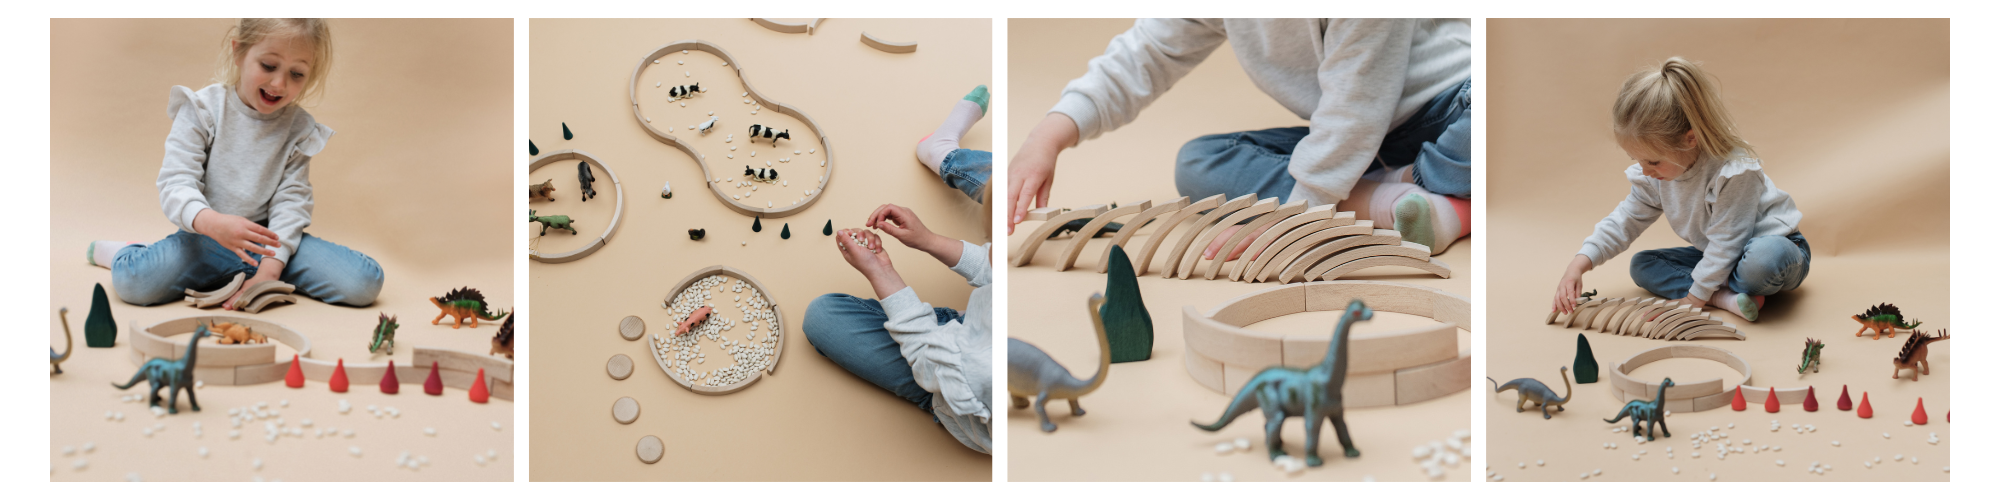 Kind spielt mit Dino Figuren und Holzbausteinen